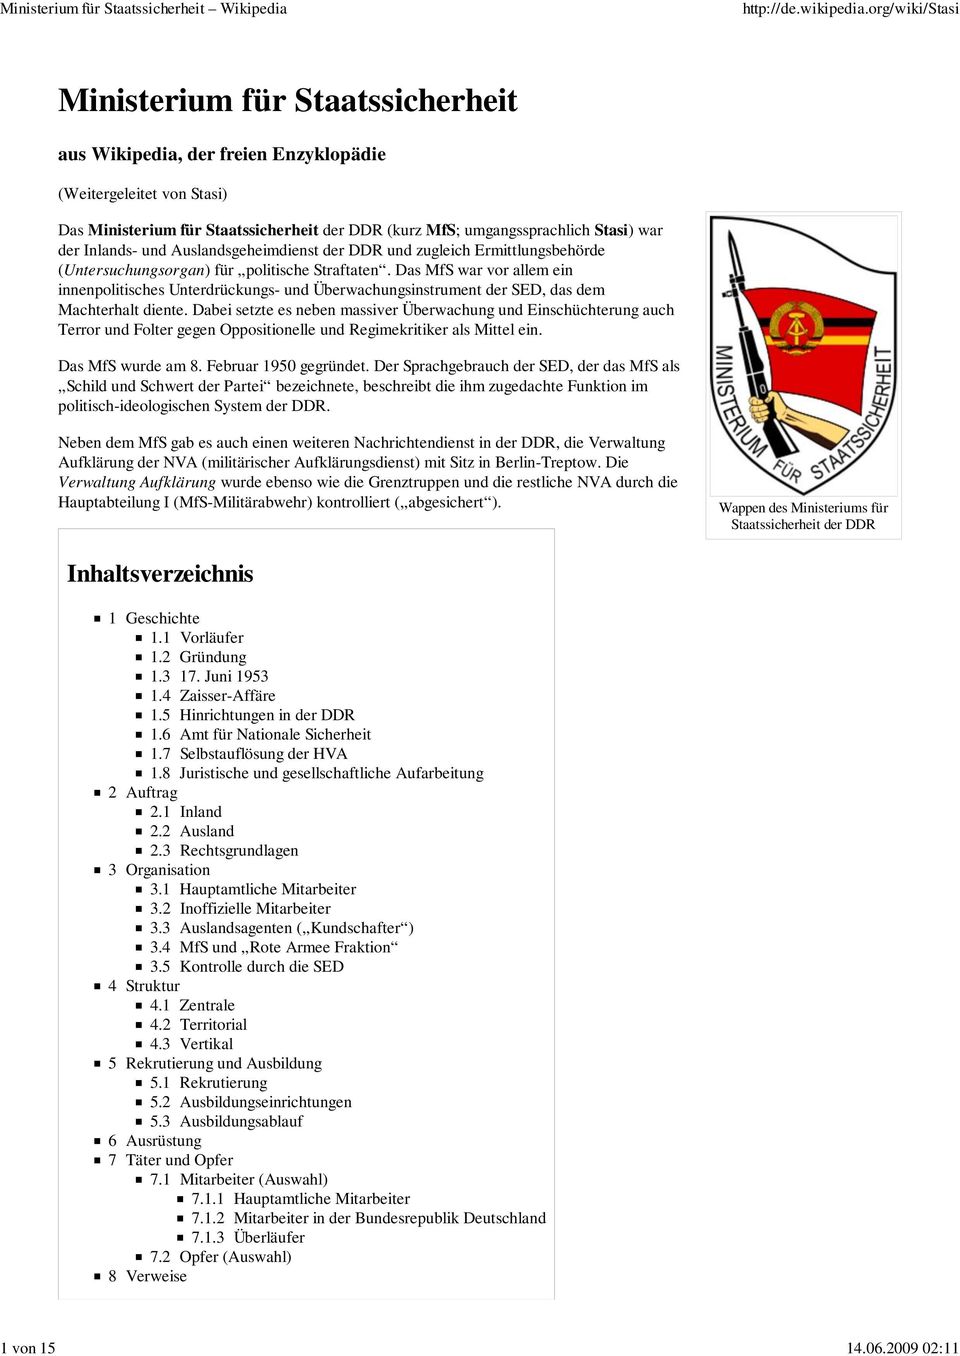 Inlands- und Auslandsgeheimdienst der DDR und zugleich Ermittlungsbehörde (Untersuchungsorgan) für politische Straftaten.